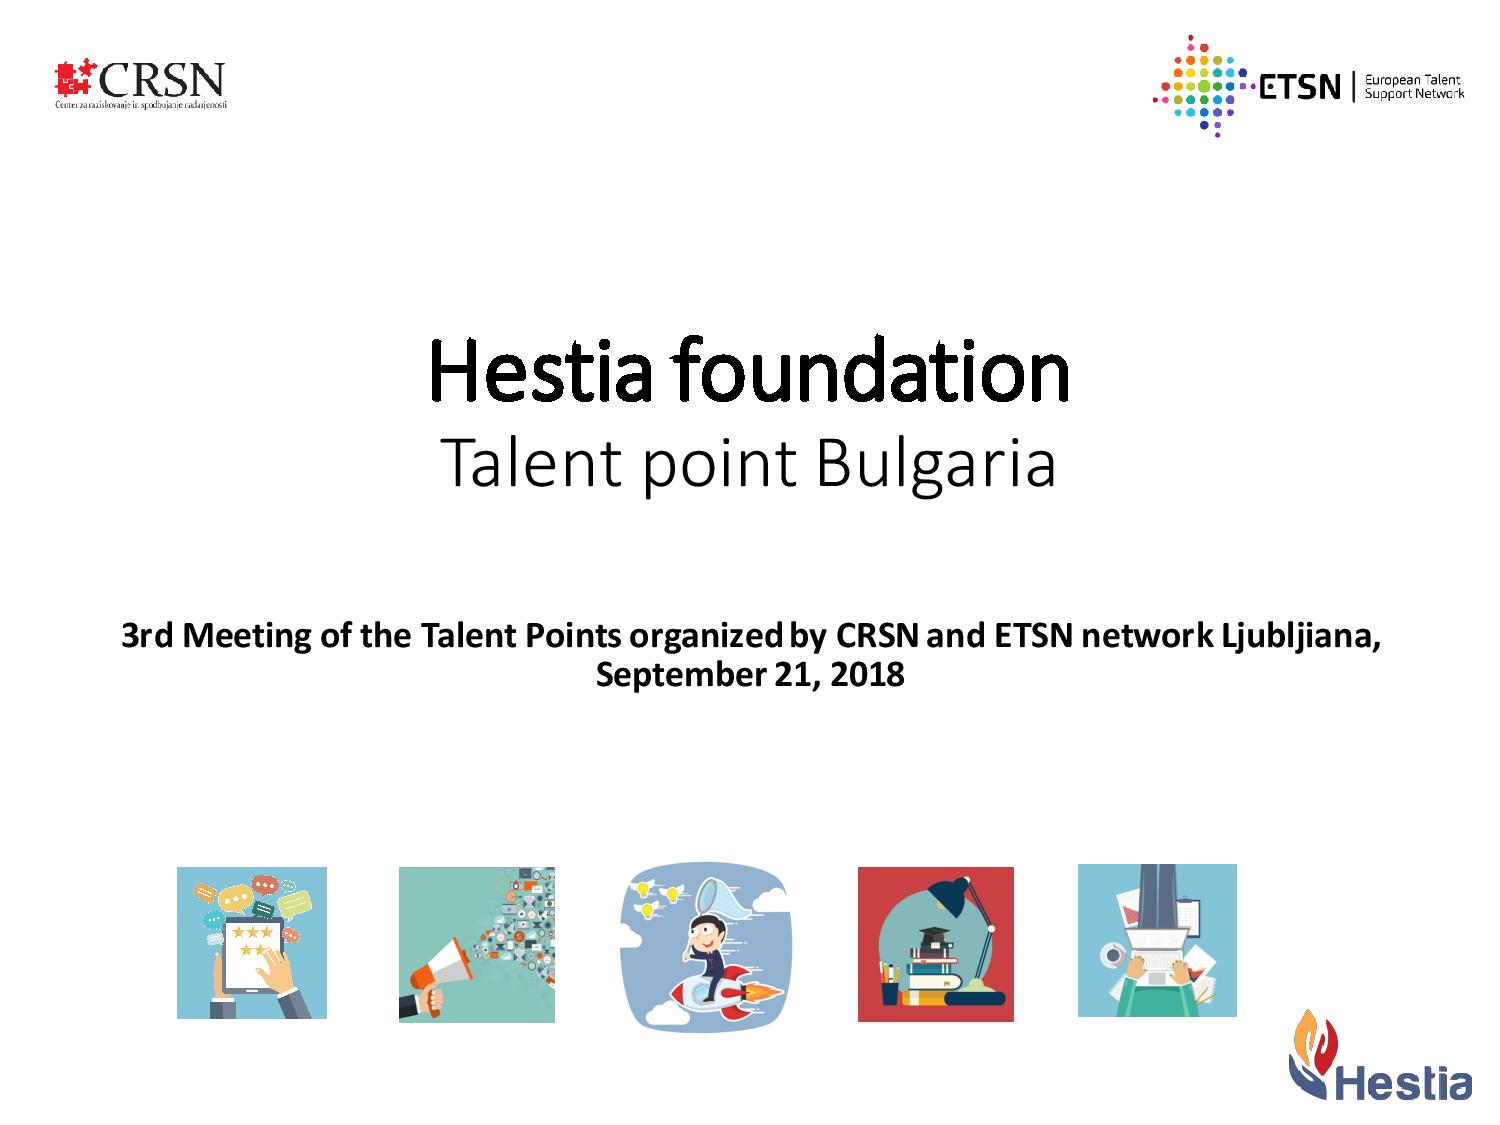 Фондация „Хестия” е европейска точка за развиване на таланта за България